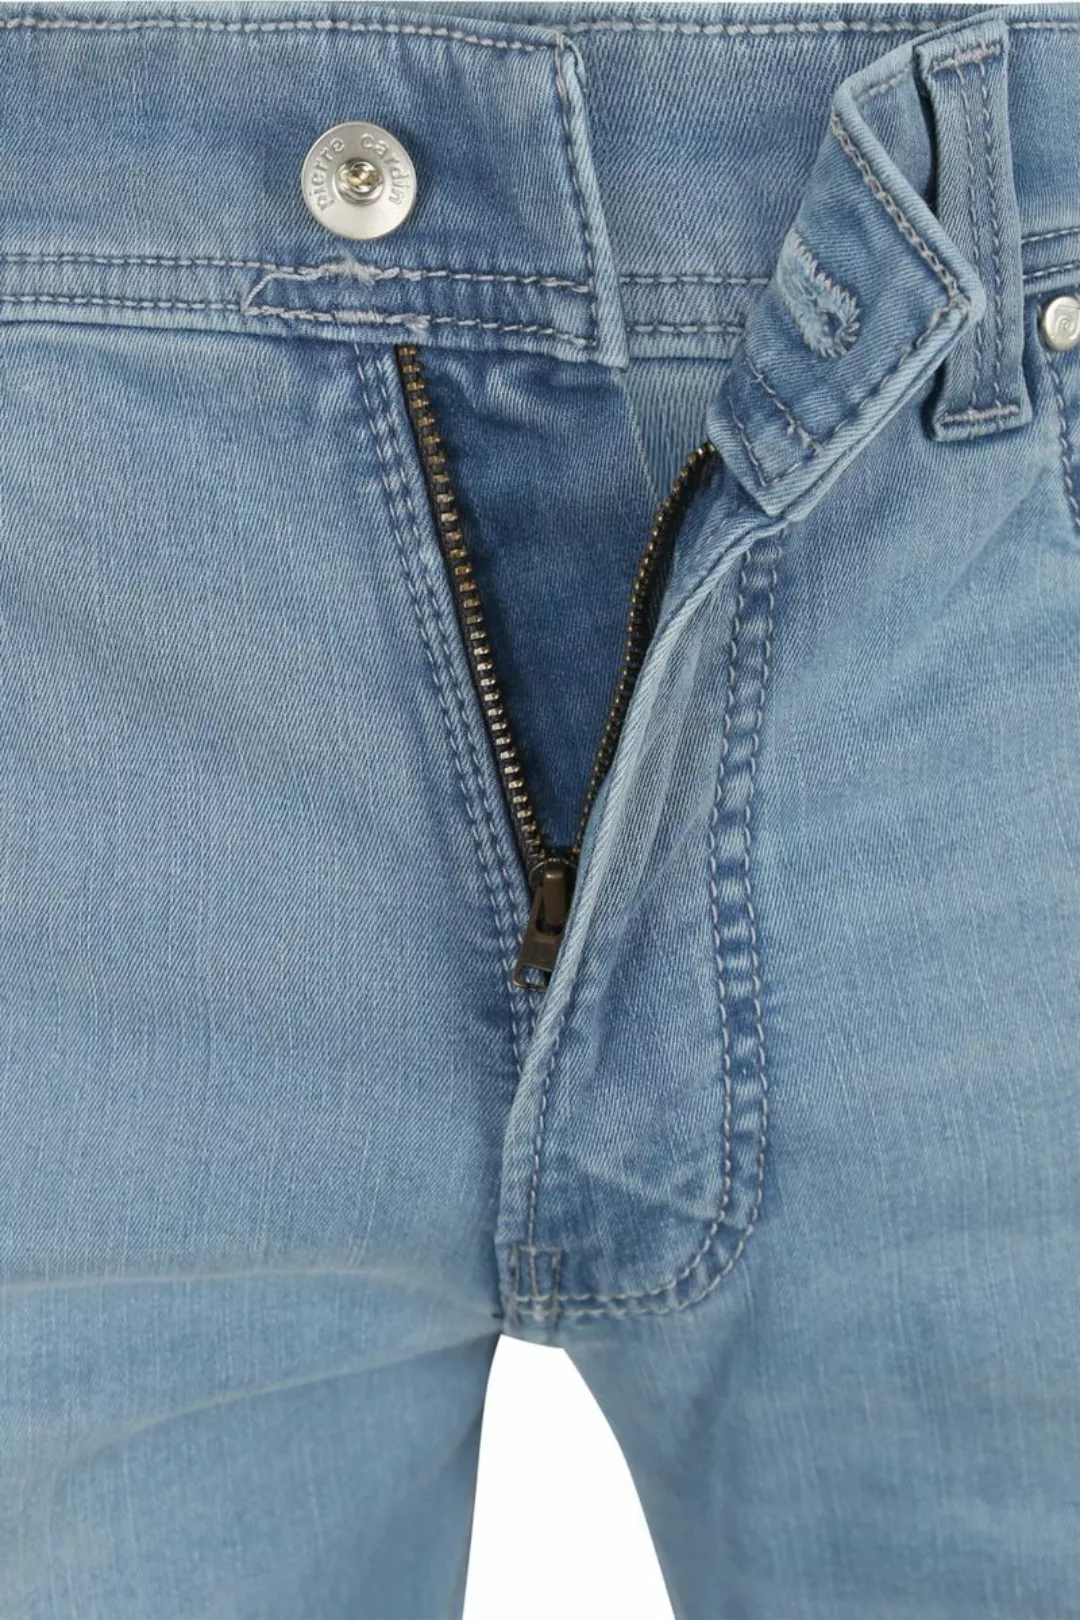 Pierre Cardin Jeans Lyon Tapered Future Flex Hellblau  - Größe W 36 - L 32 günstig online kaufen